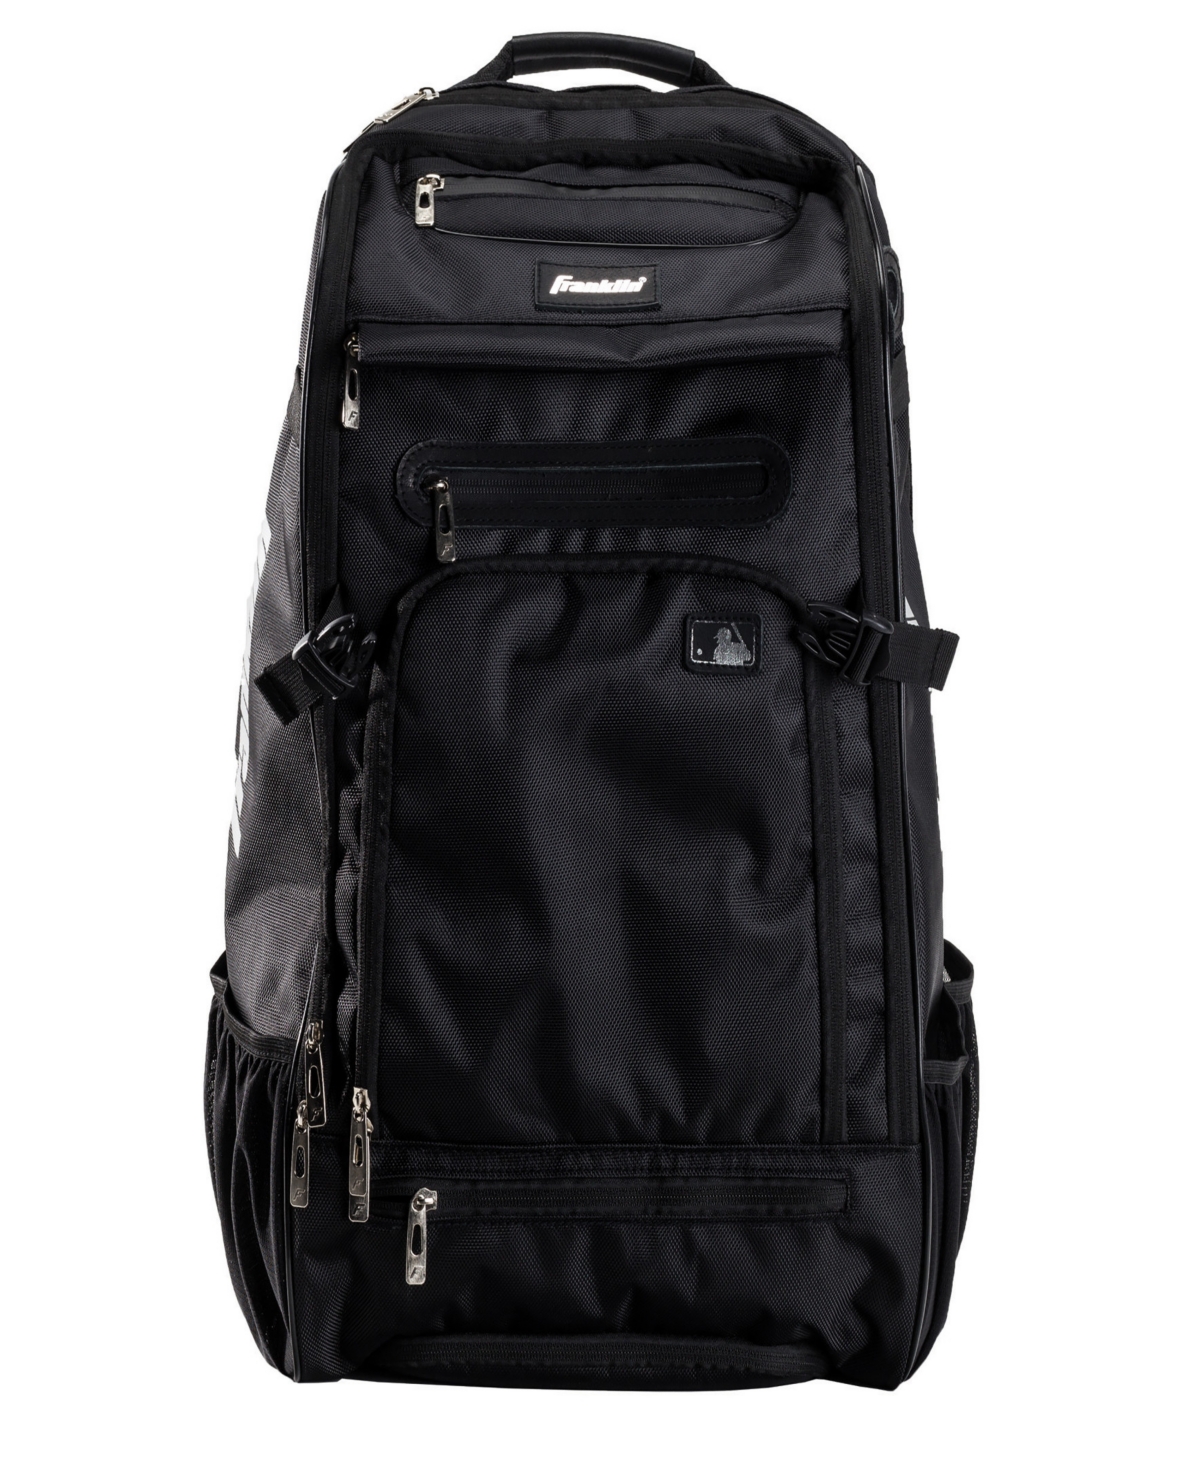 Mlb Traveler Elite Chrome Equipment Baseball Bag - Black